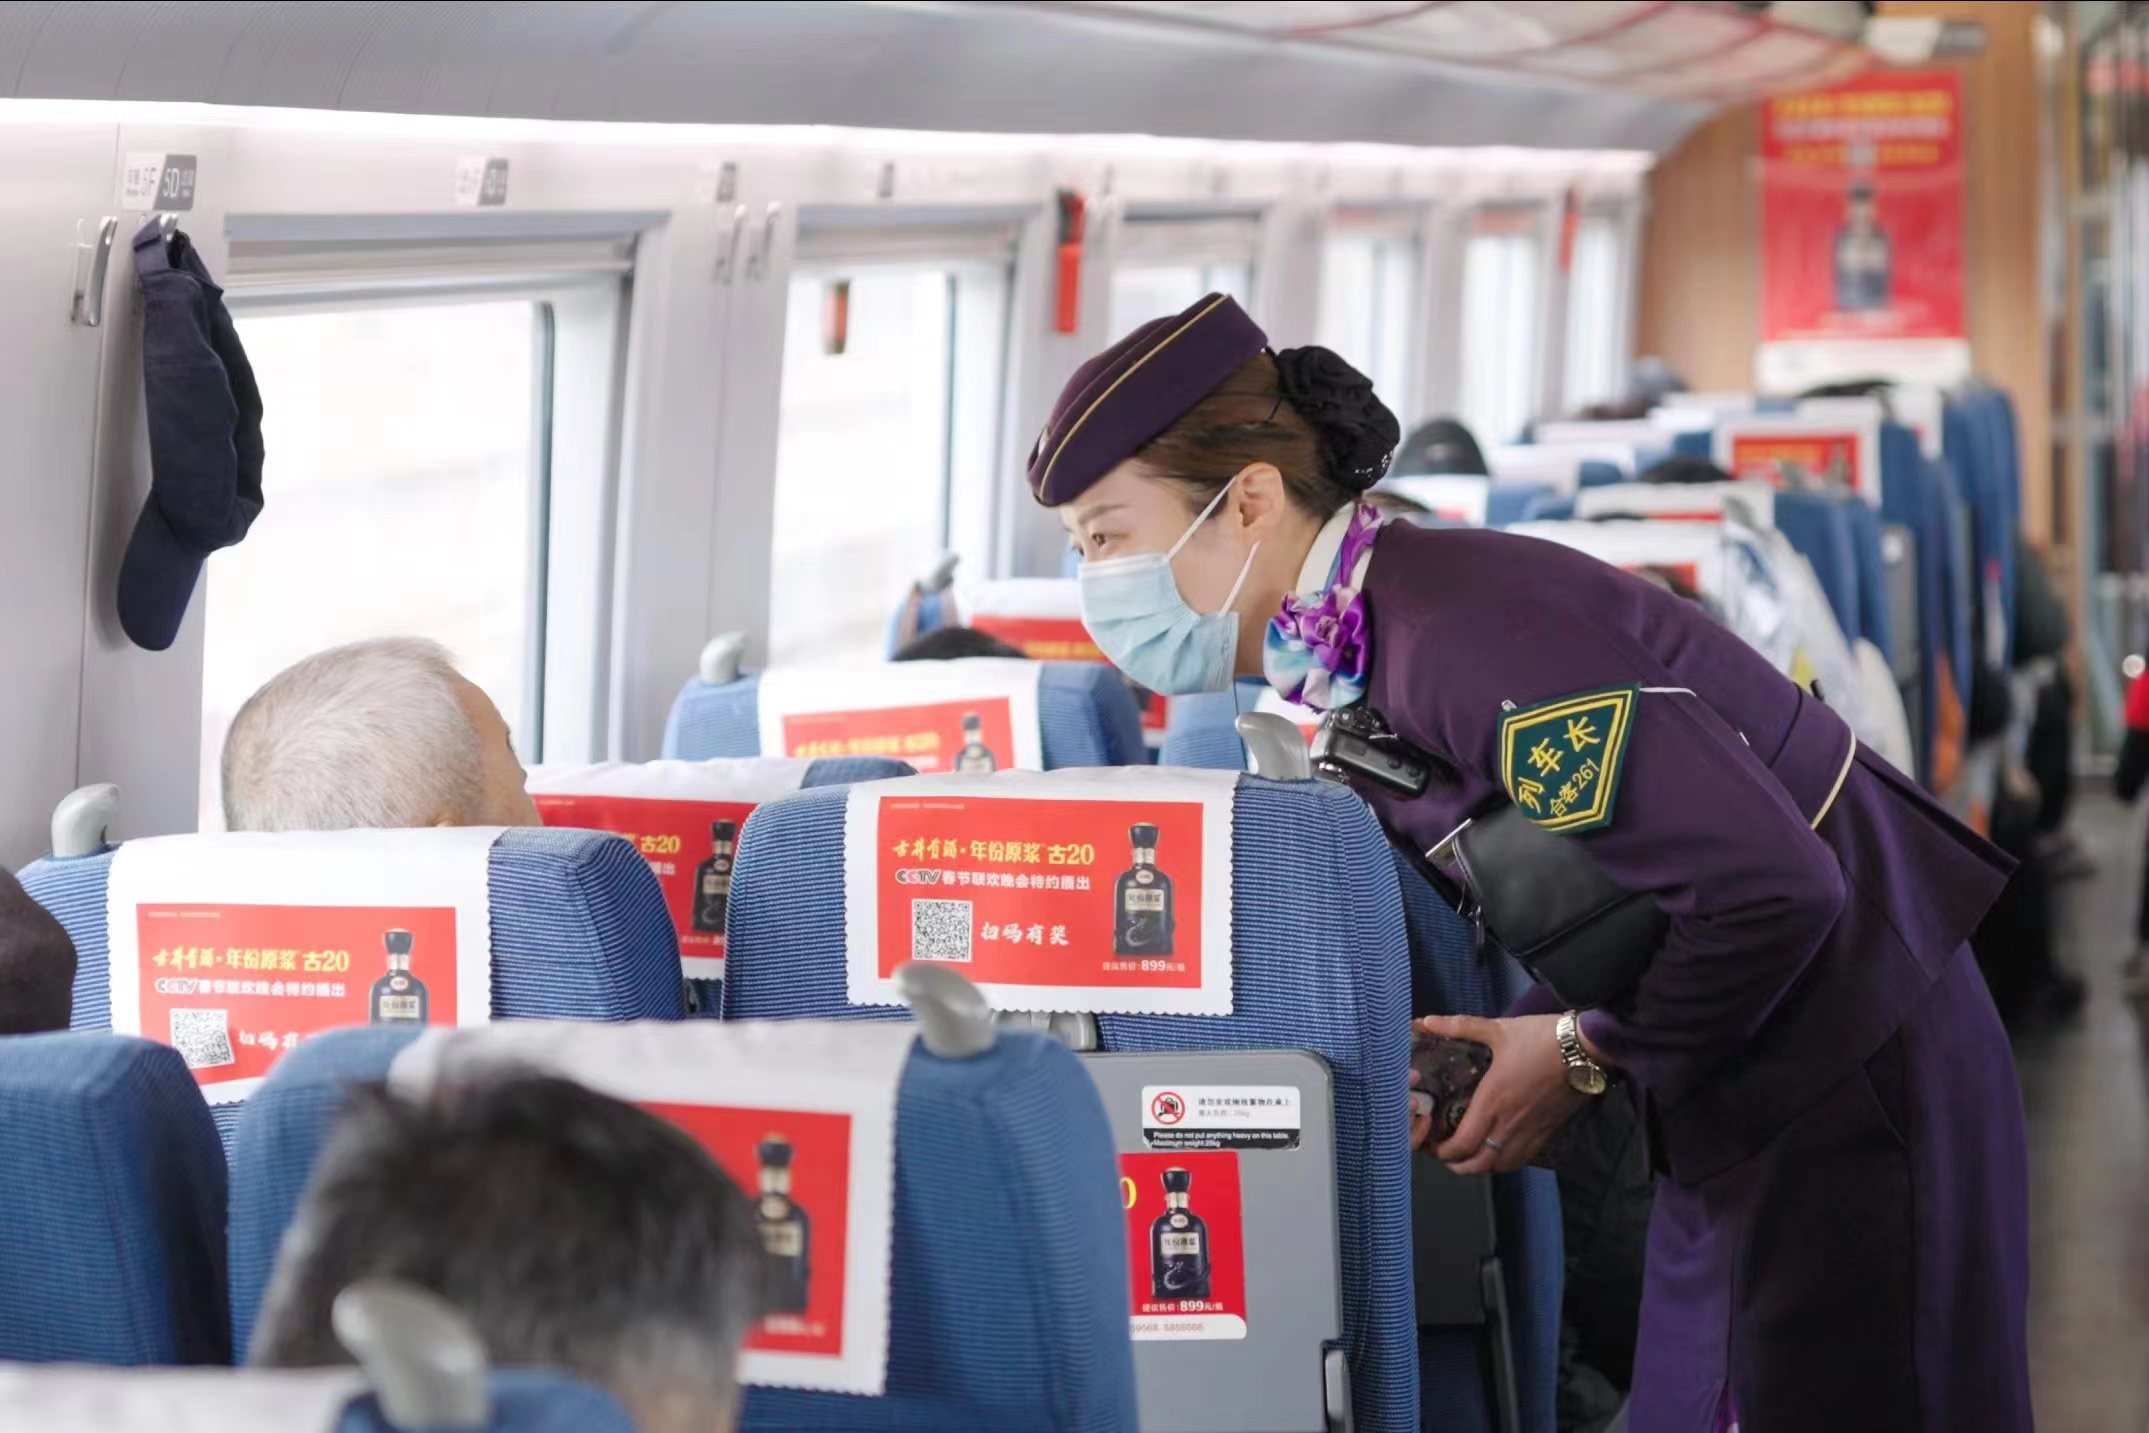 长三角铁路迎返程客流最高峰 当天预计发送旅客266万人次